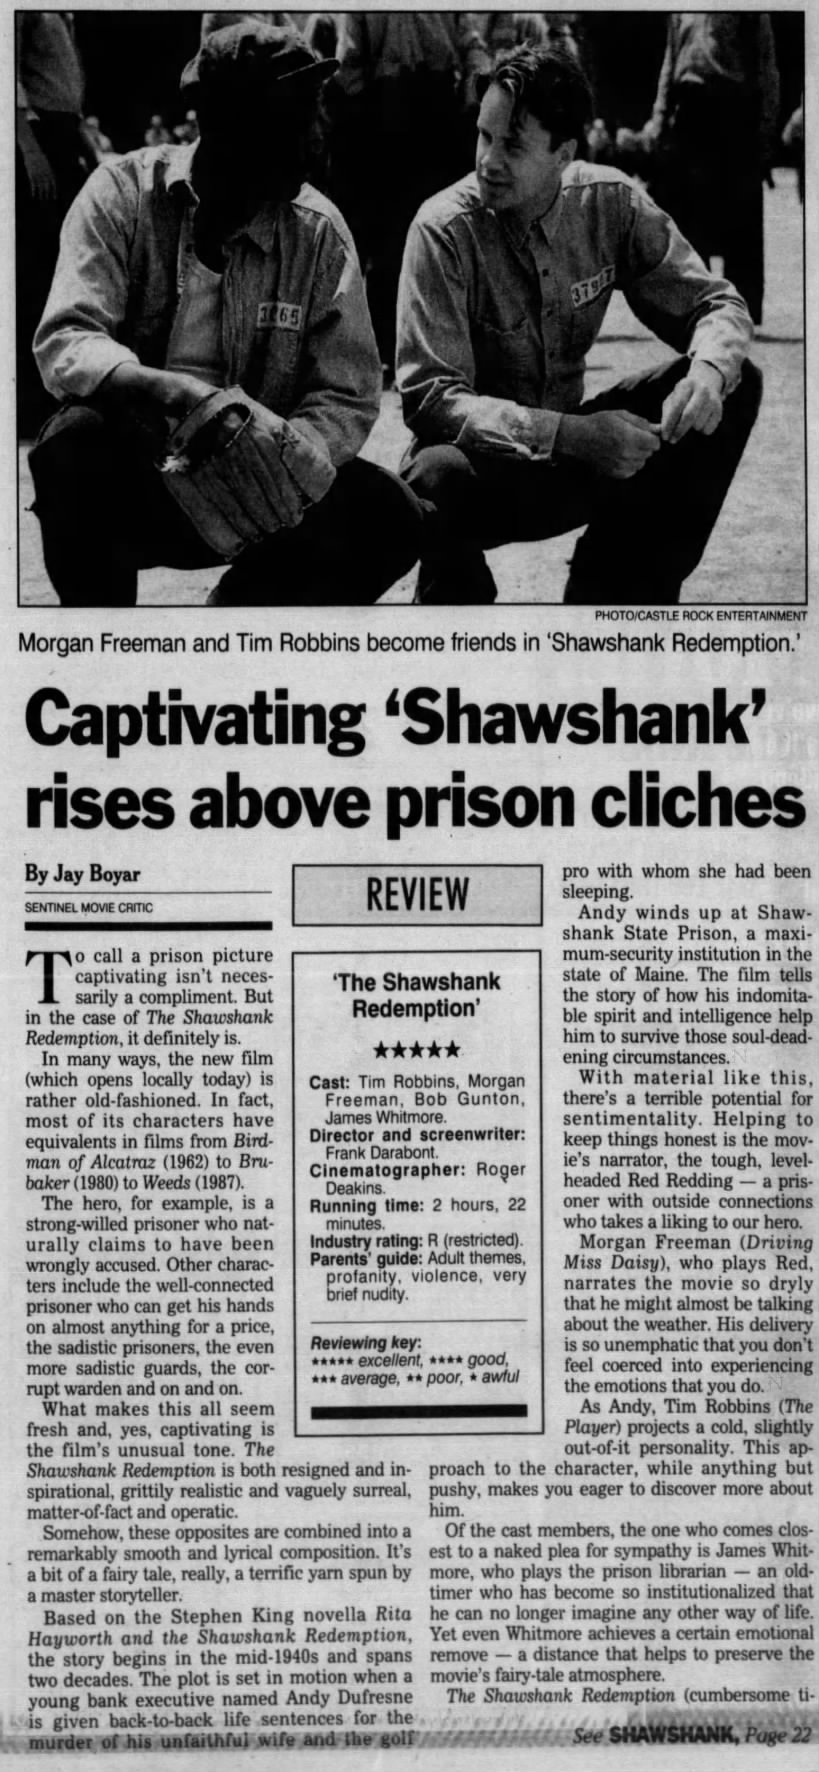 The Shawshank Redemption (1/2)